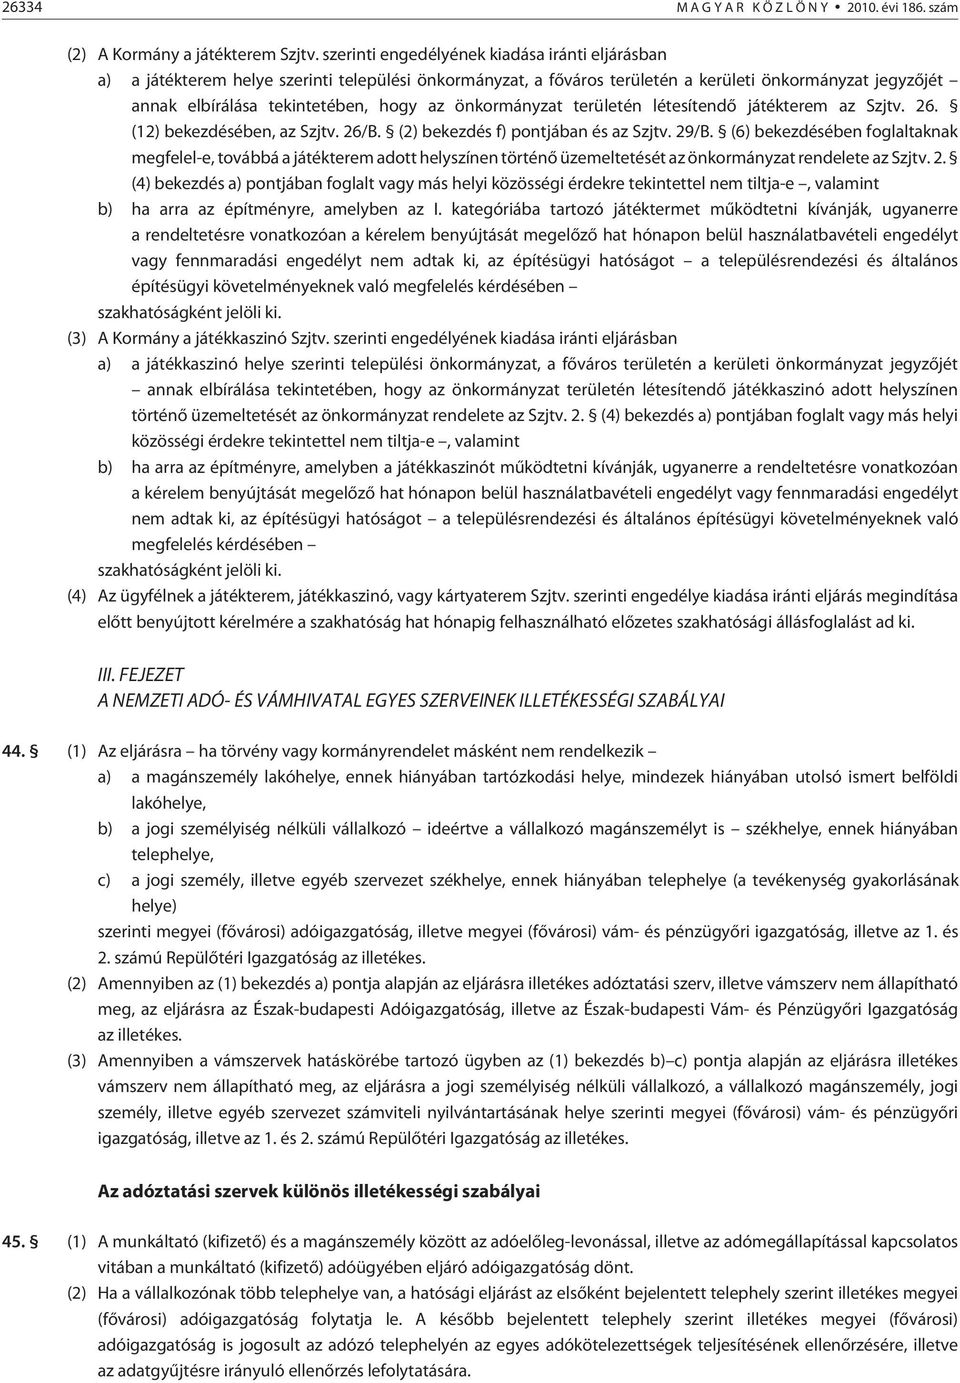 önkormányzat területén létesítendõ játékterem az Szjtv. 26. (12) bekezdésében, az Szjtv. 26/B. (2) bekezdés f) pontjában és az Szjtv. 29/B.